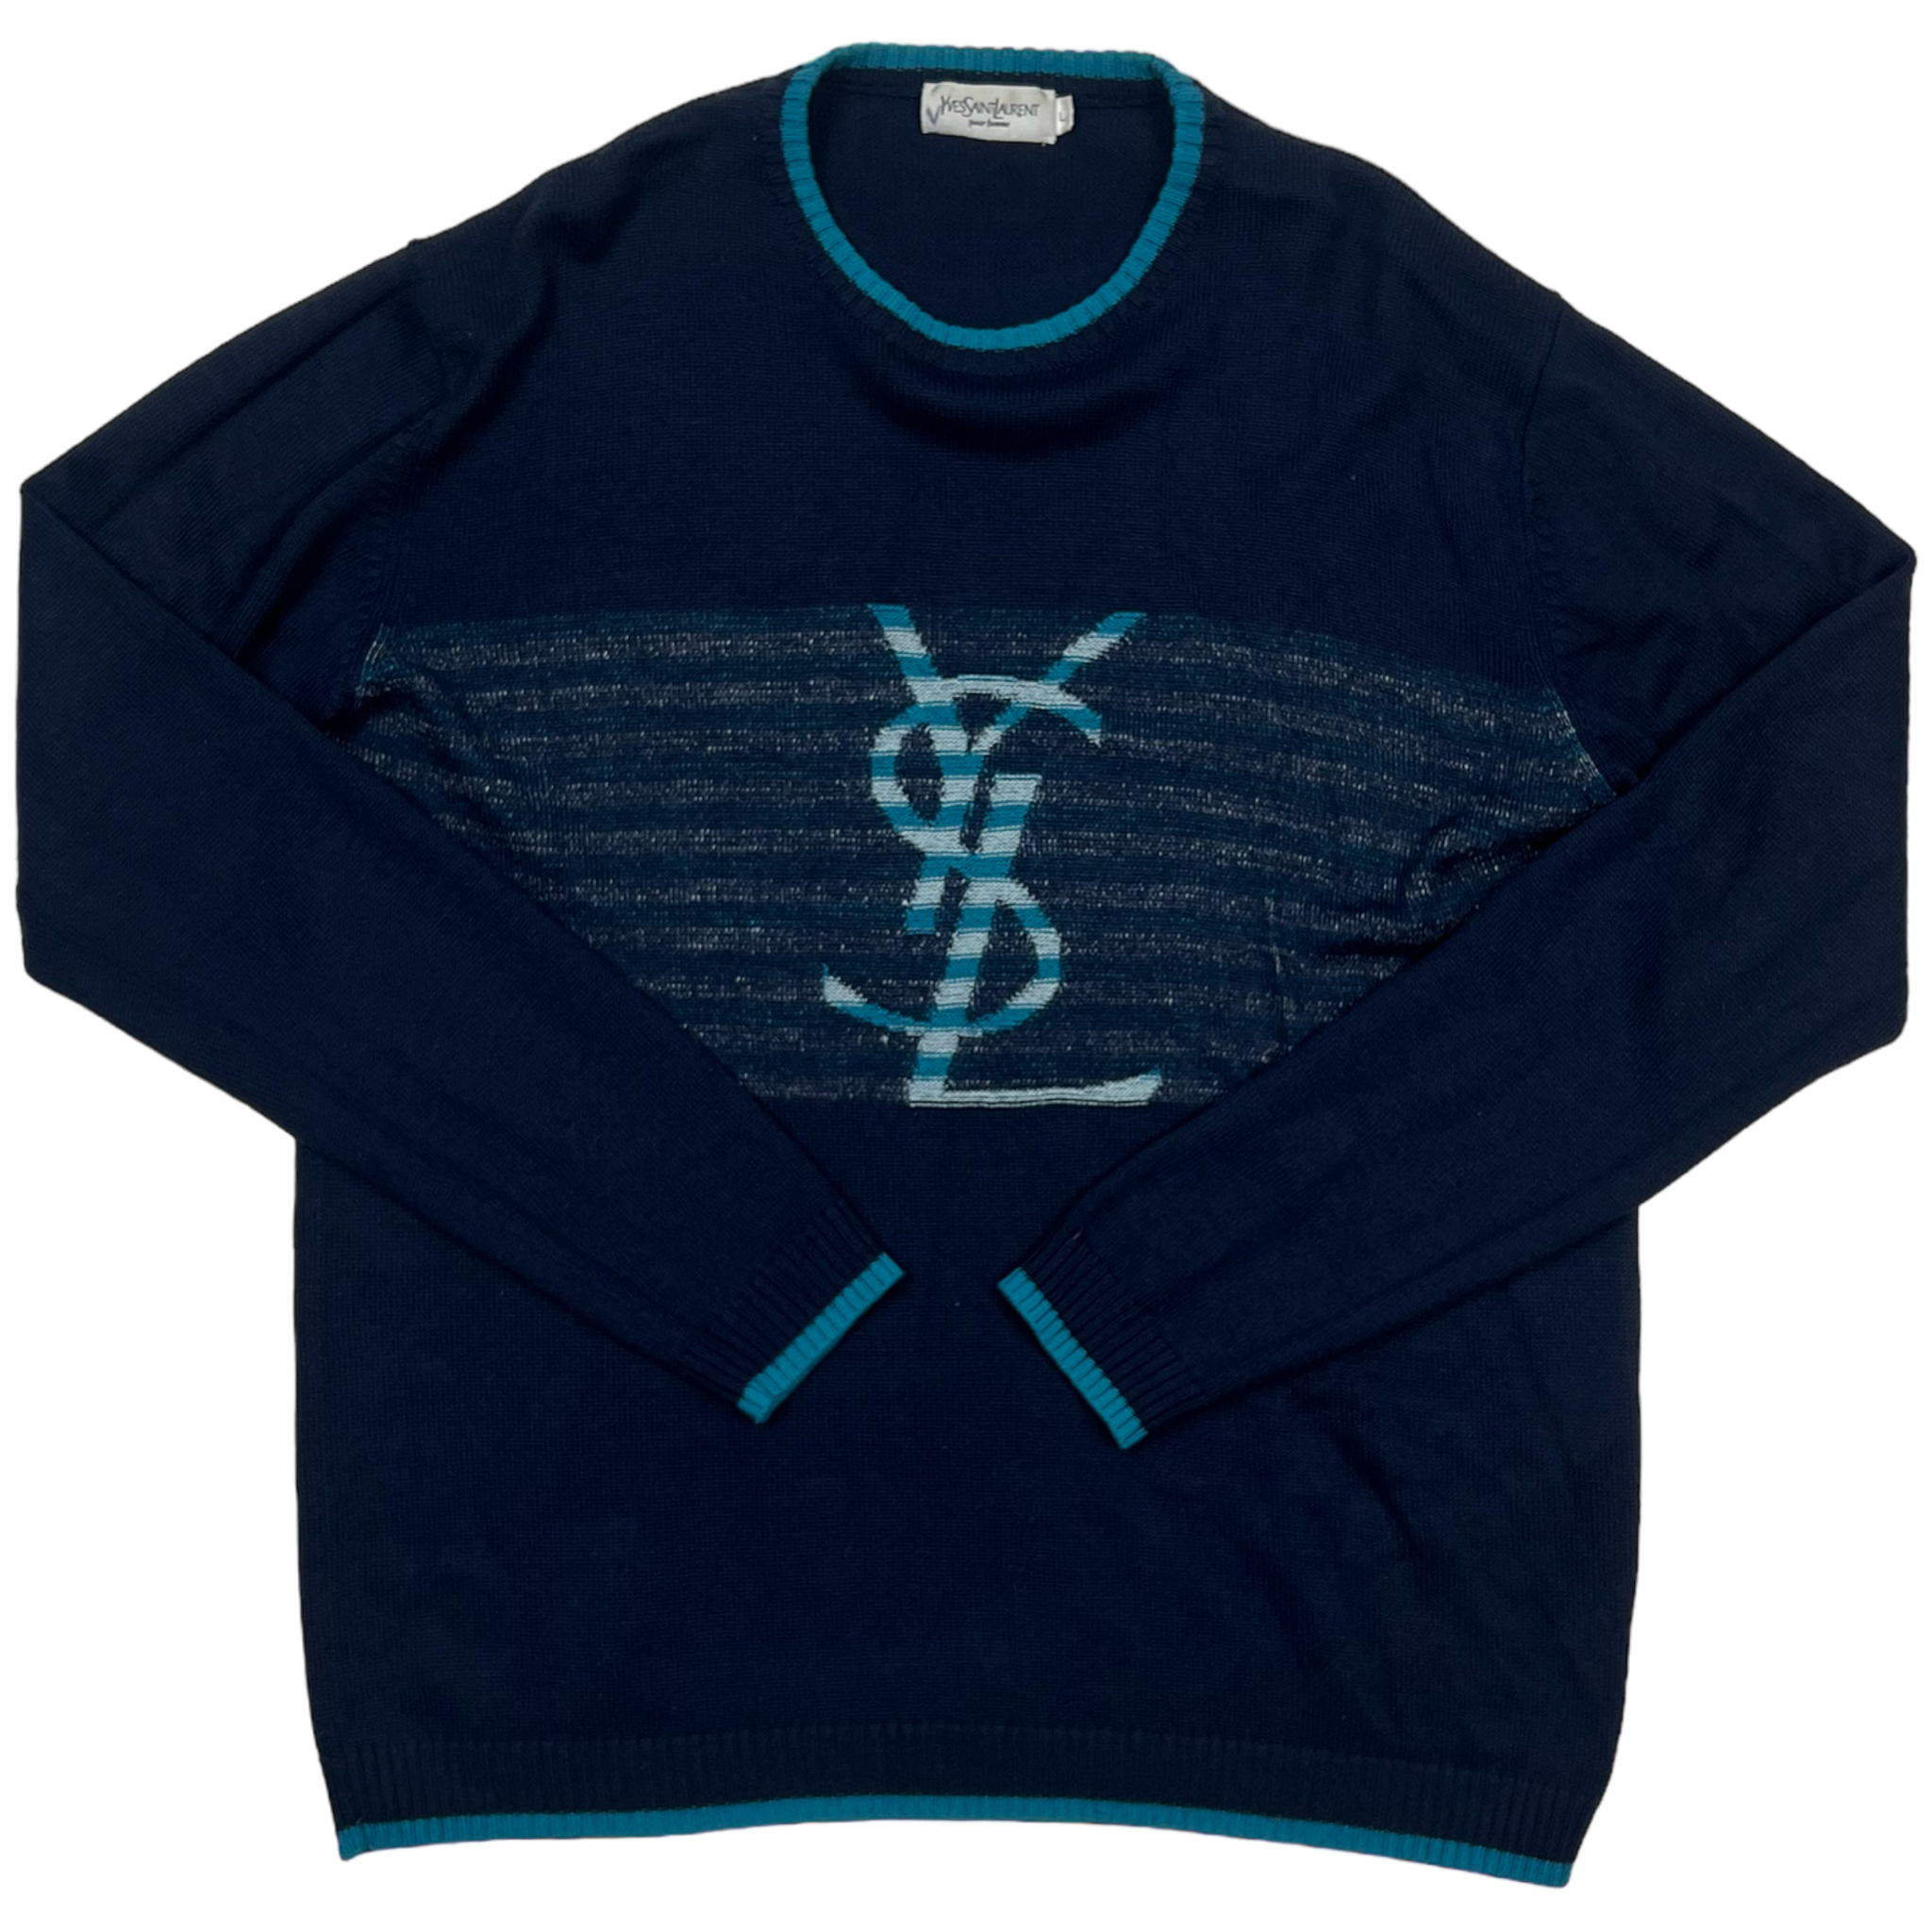 Yves Saint Laurent Sweater (L)